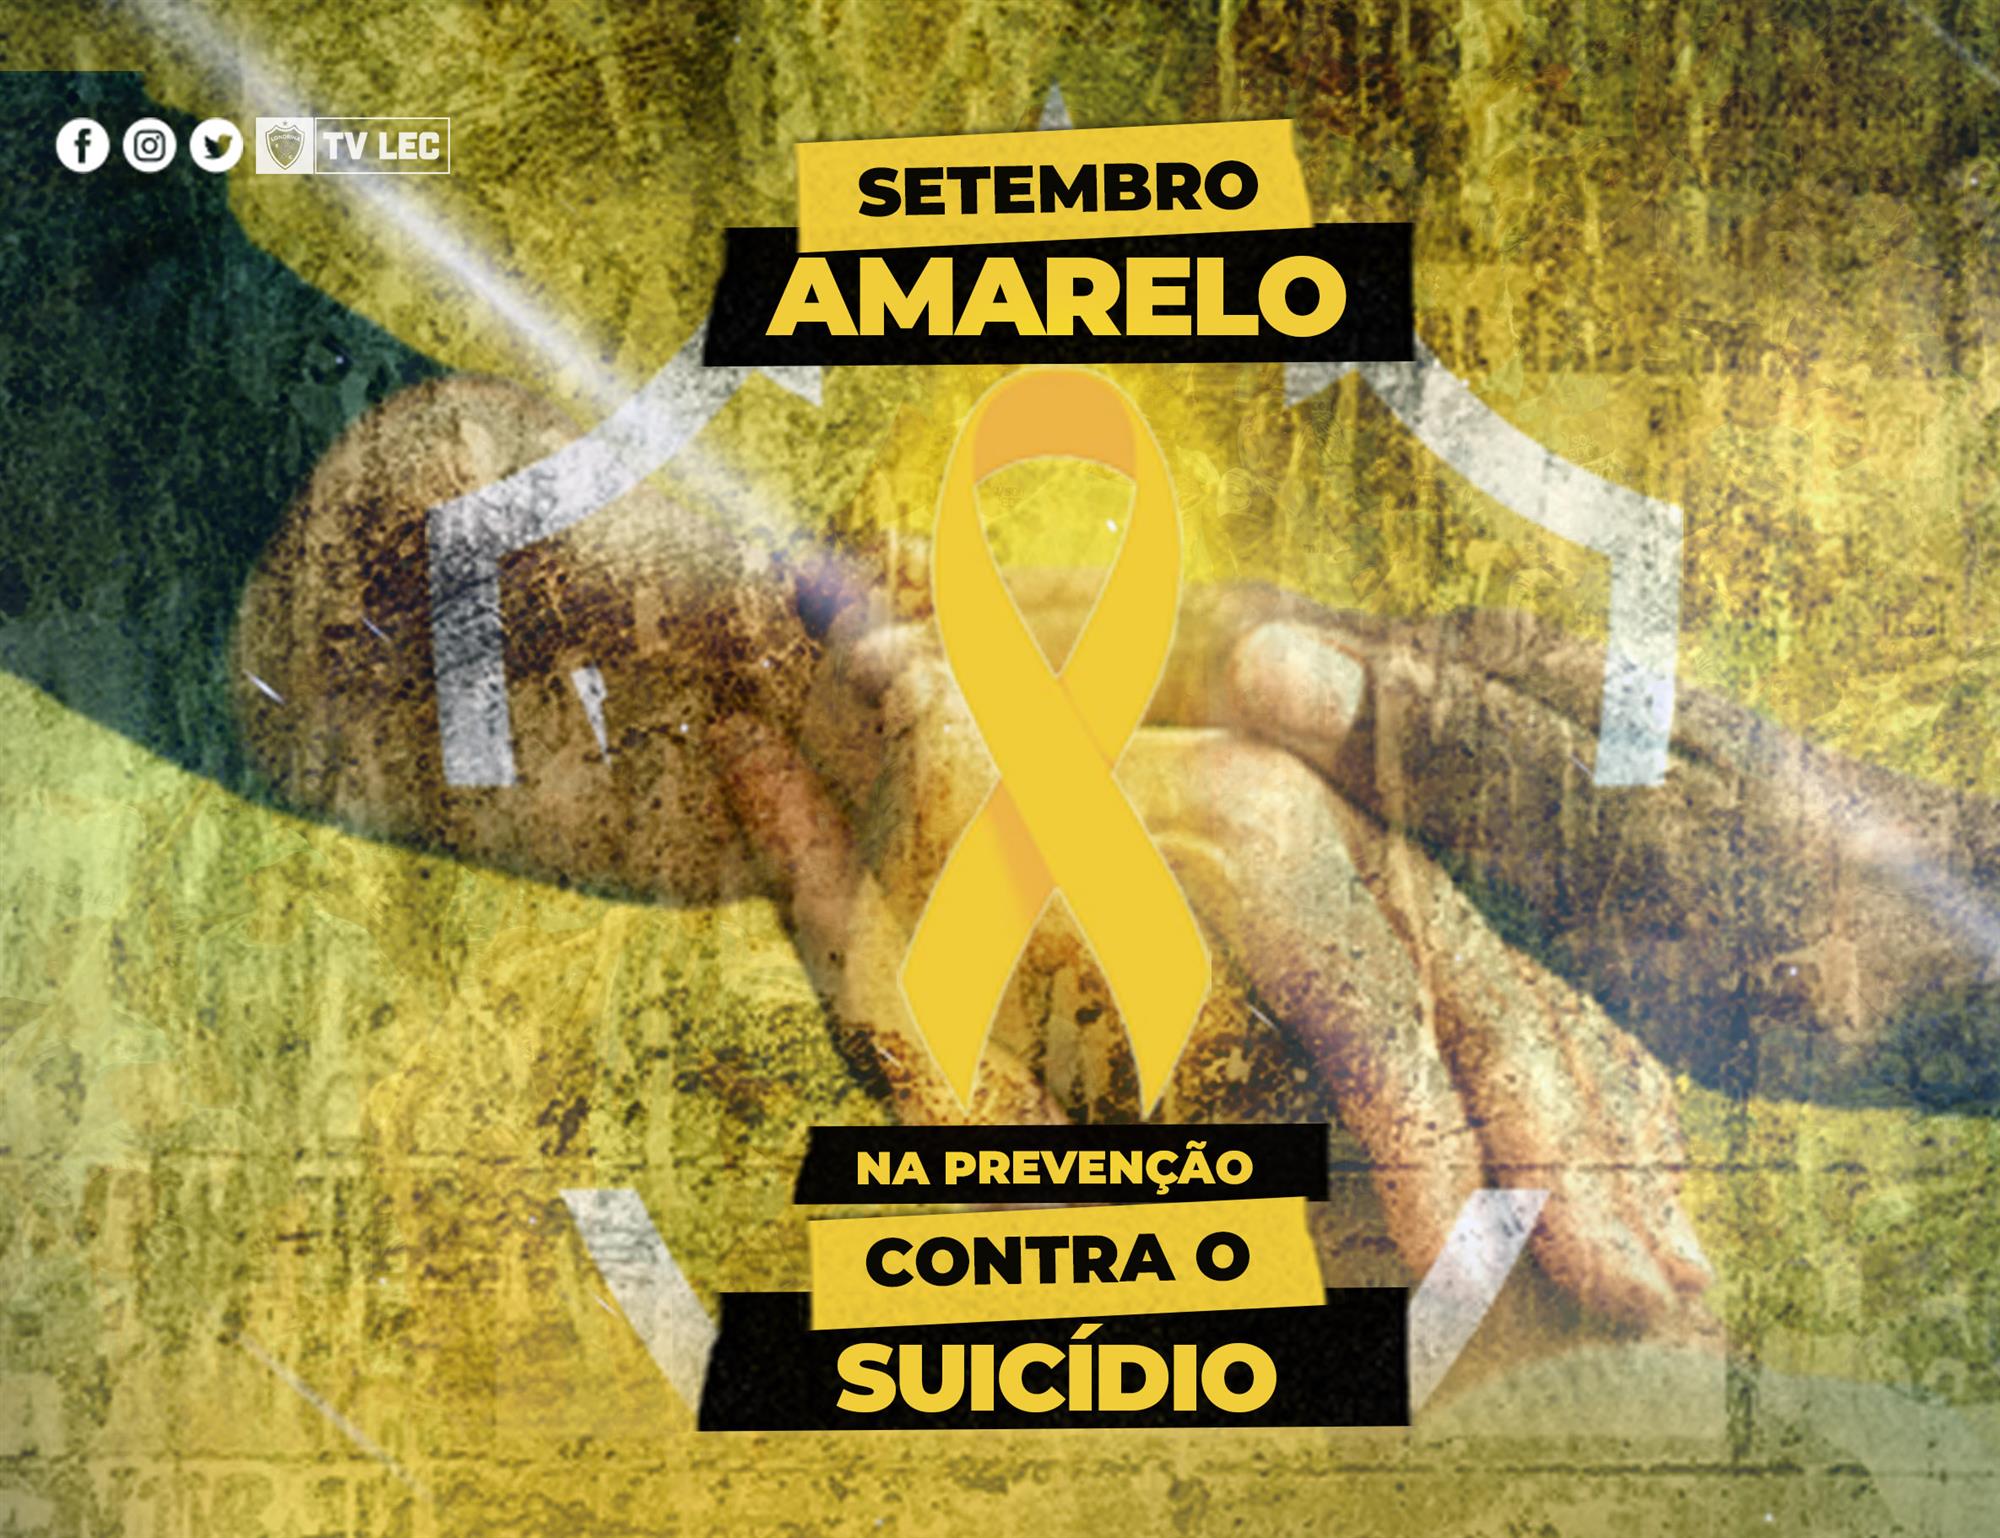 Setembro Amarelo: Episódio 02 – Como diagnosticar situações que podem levar ao suicídio